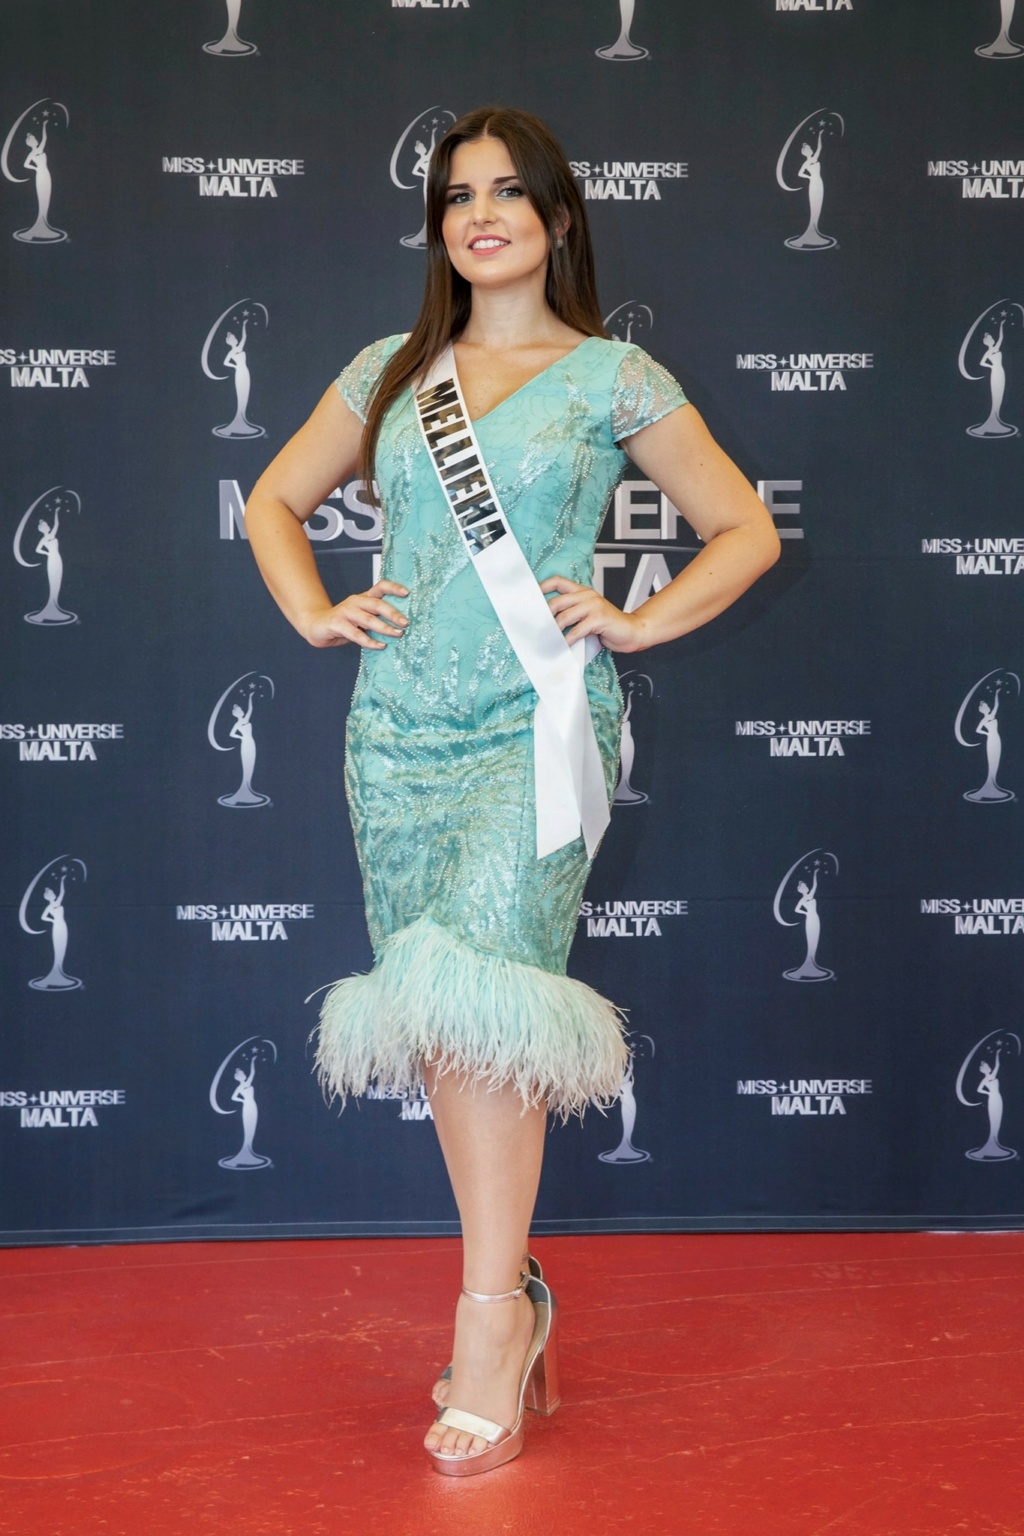 Miss Universe MALTA 2021 is Valletta 21563211